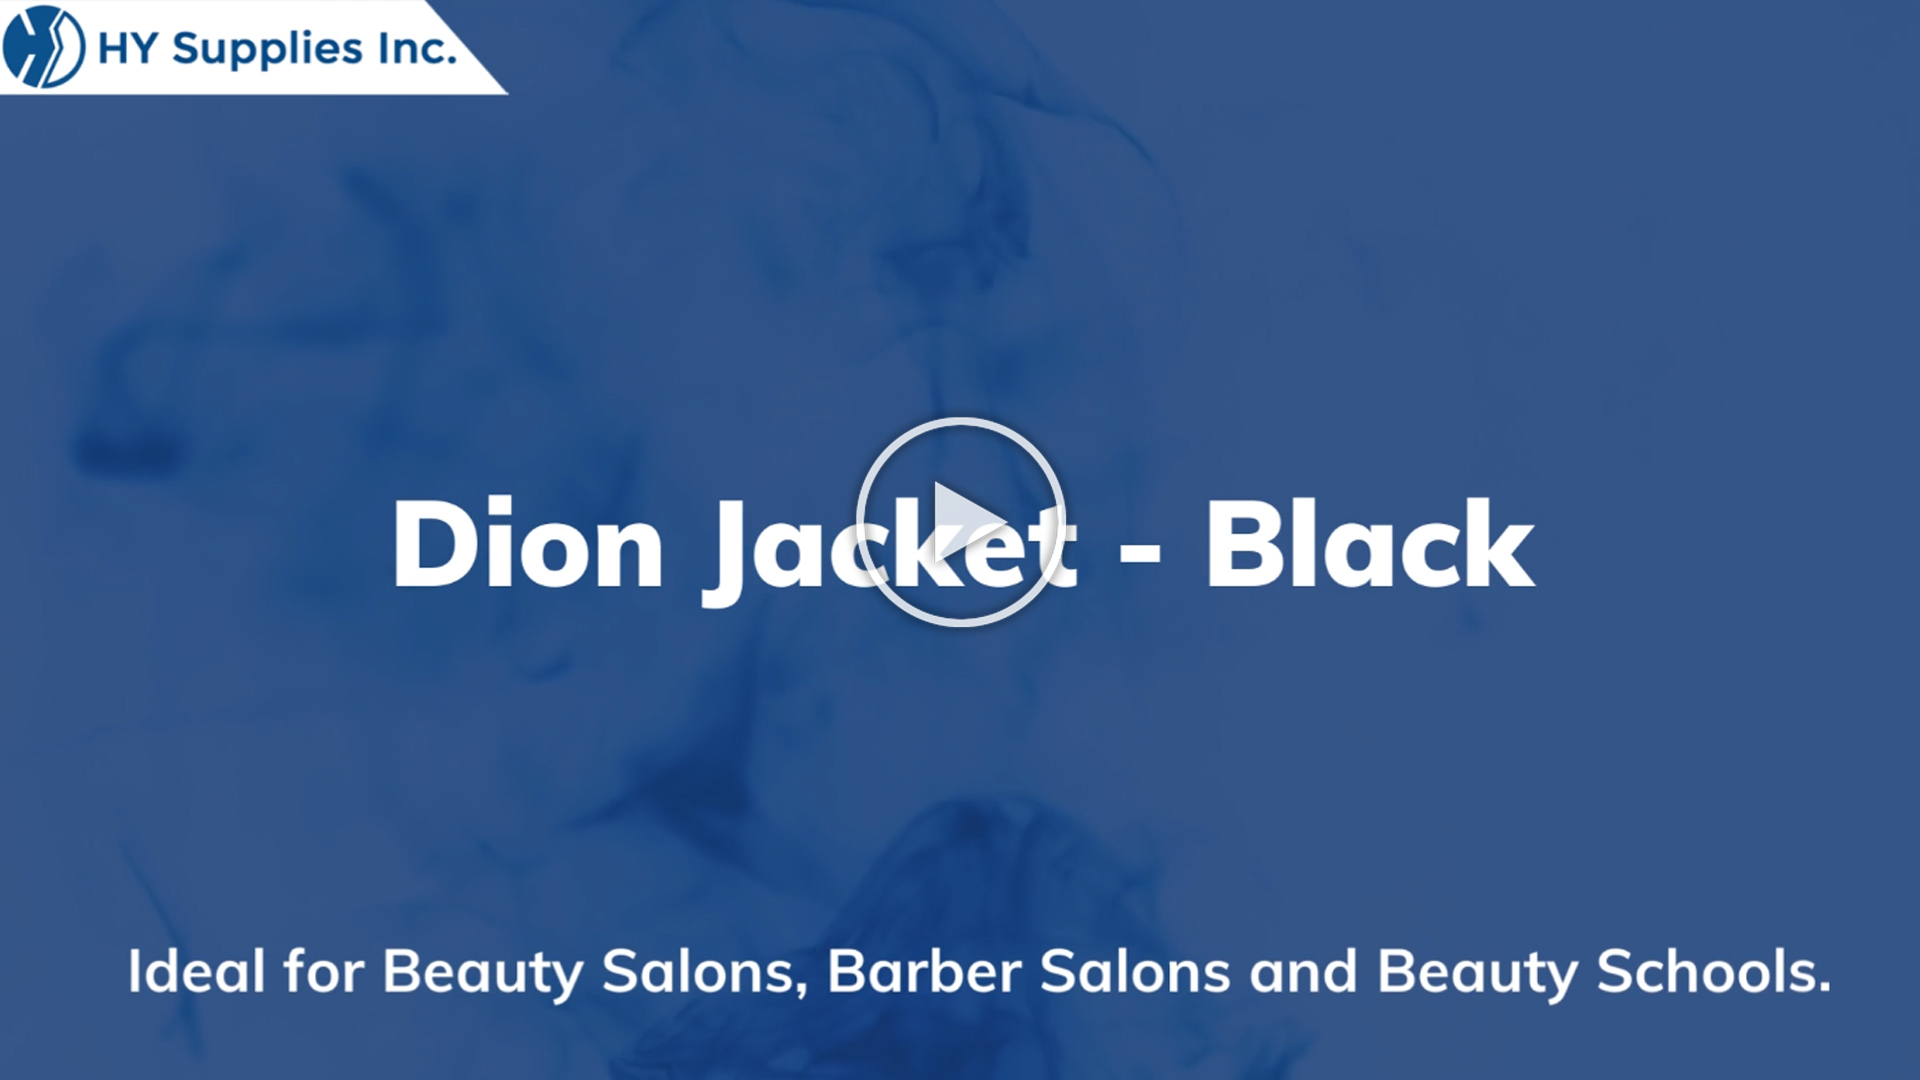 Dion Jacket - Black